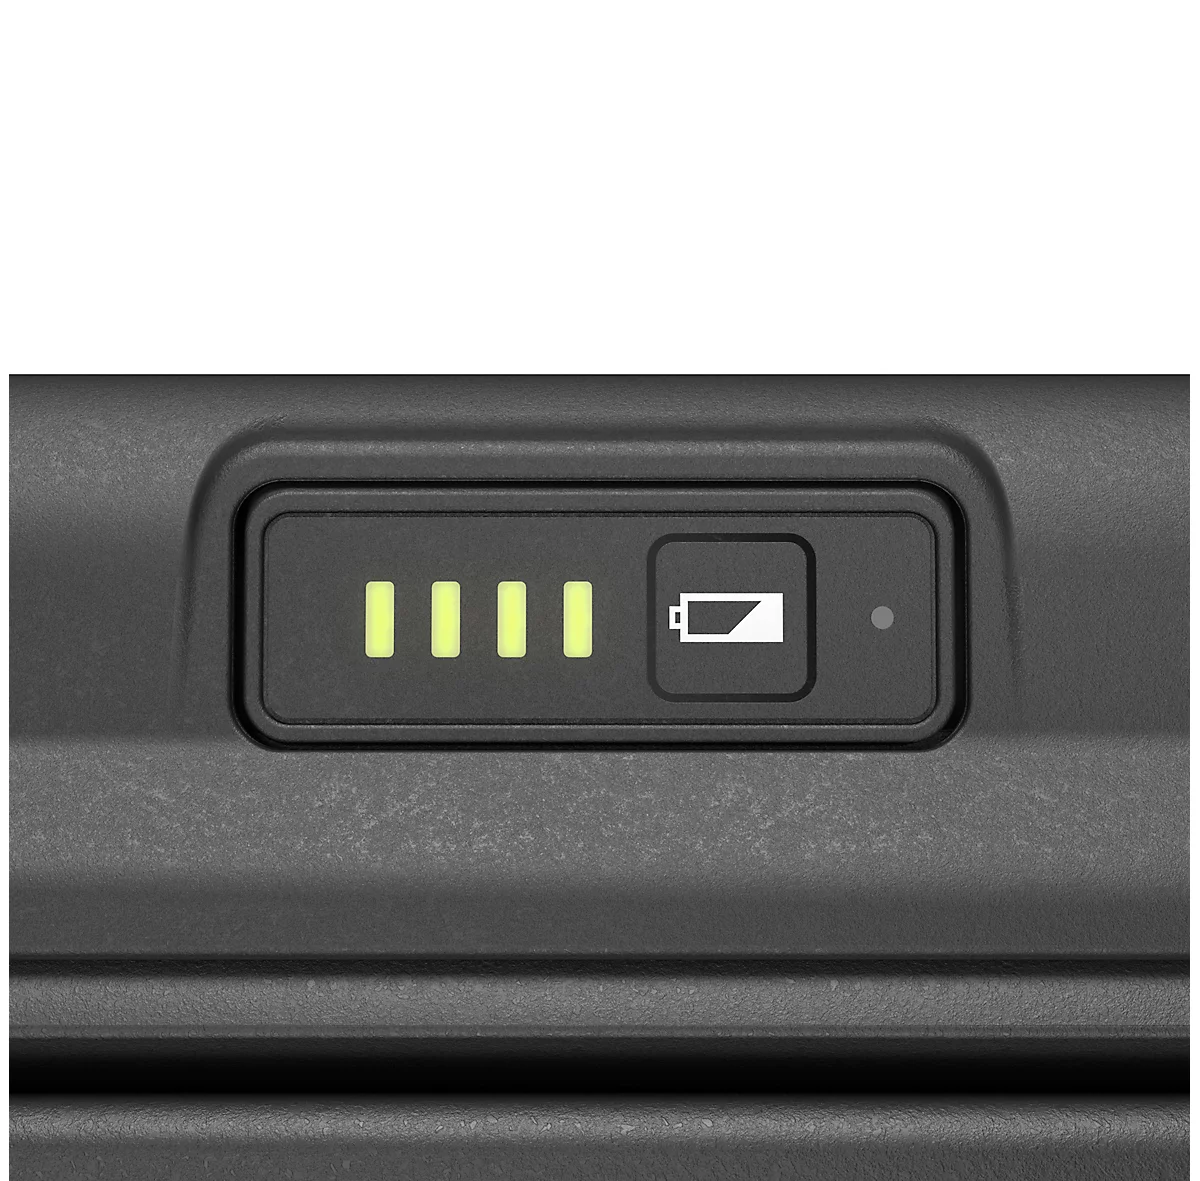 Tintenstrahldrucker Canon PIXMA TR150, mobil, bis A4, WLAN/USB-Print, s/w & Farbe, mit Akku